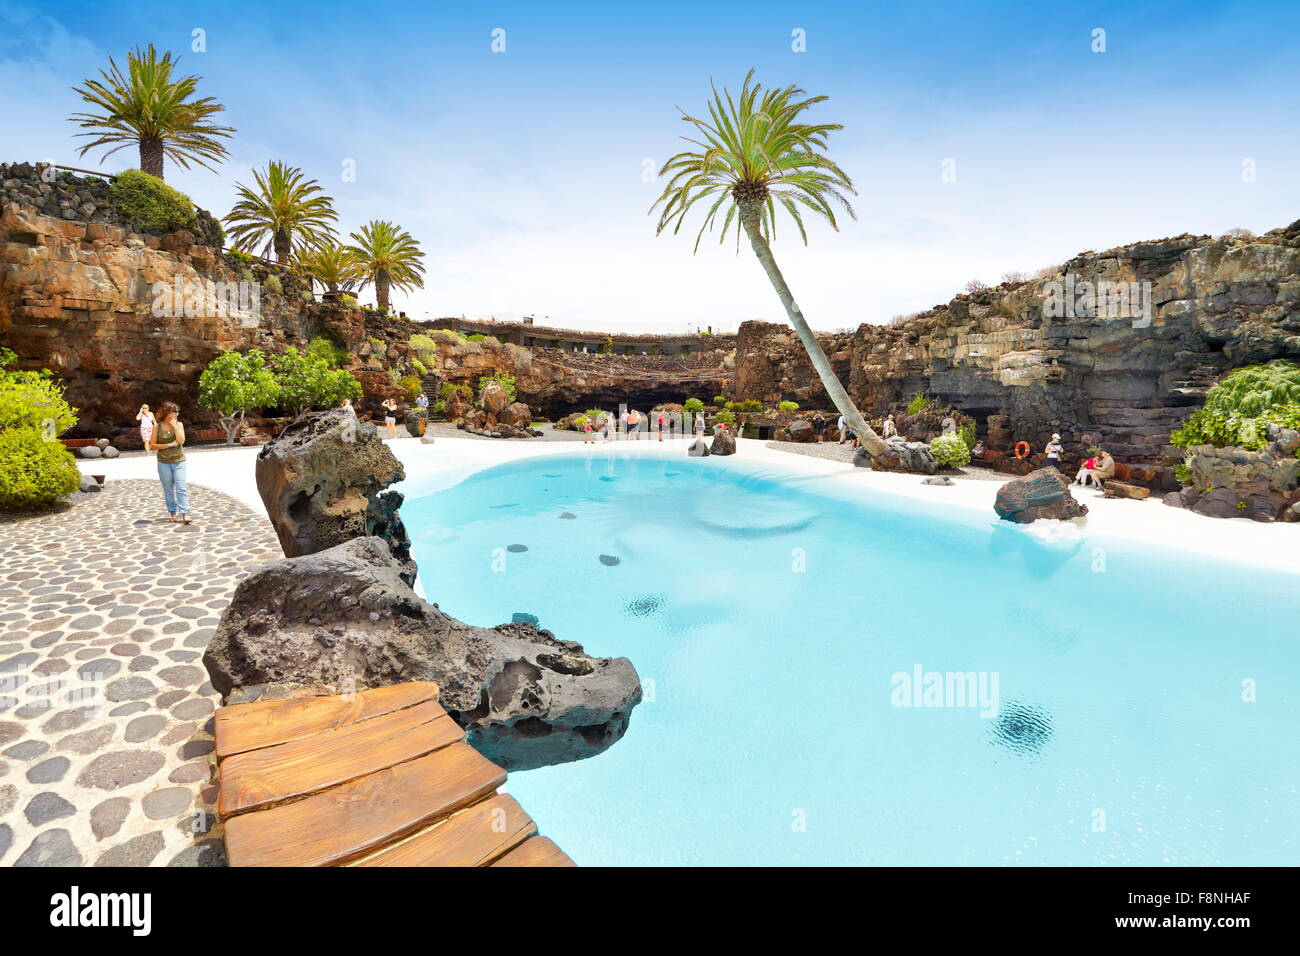 Isla de Lanzarote, azul piscina en Jameos del Aqua, España, Islas Canarias Foto de stock